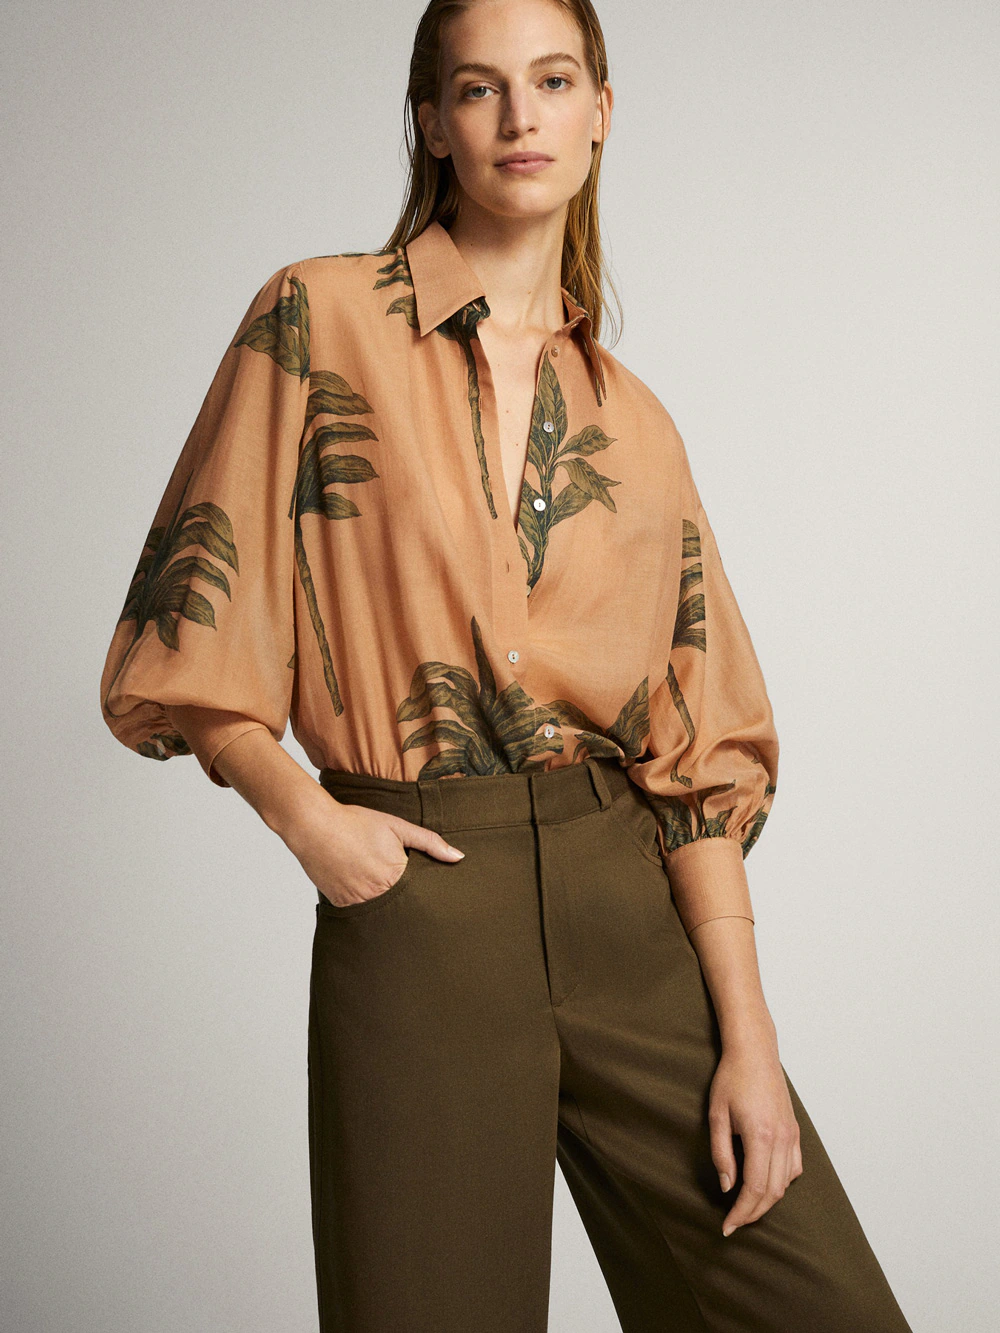 Fotos: Las blusas y más elegantes y favorecedoras están en las rebajas de Massimo Dutti a mitad de precio | Mujer Hoy